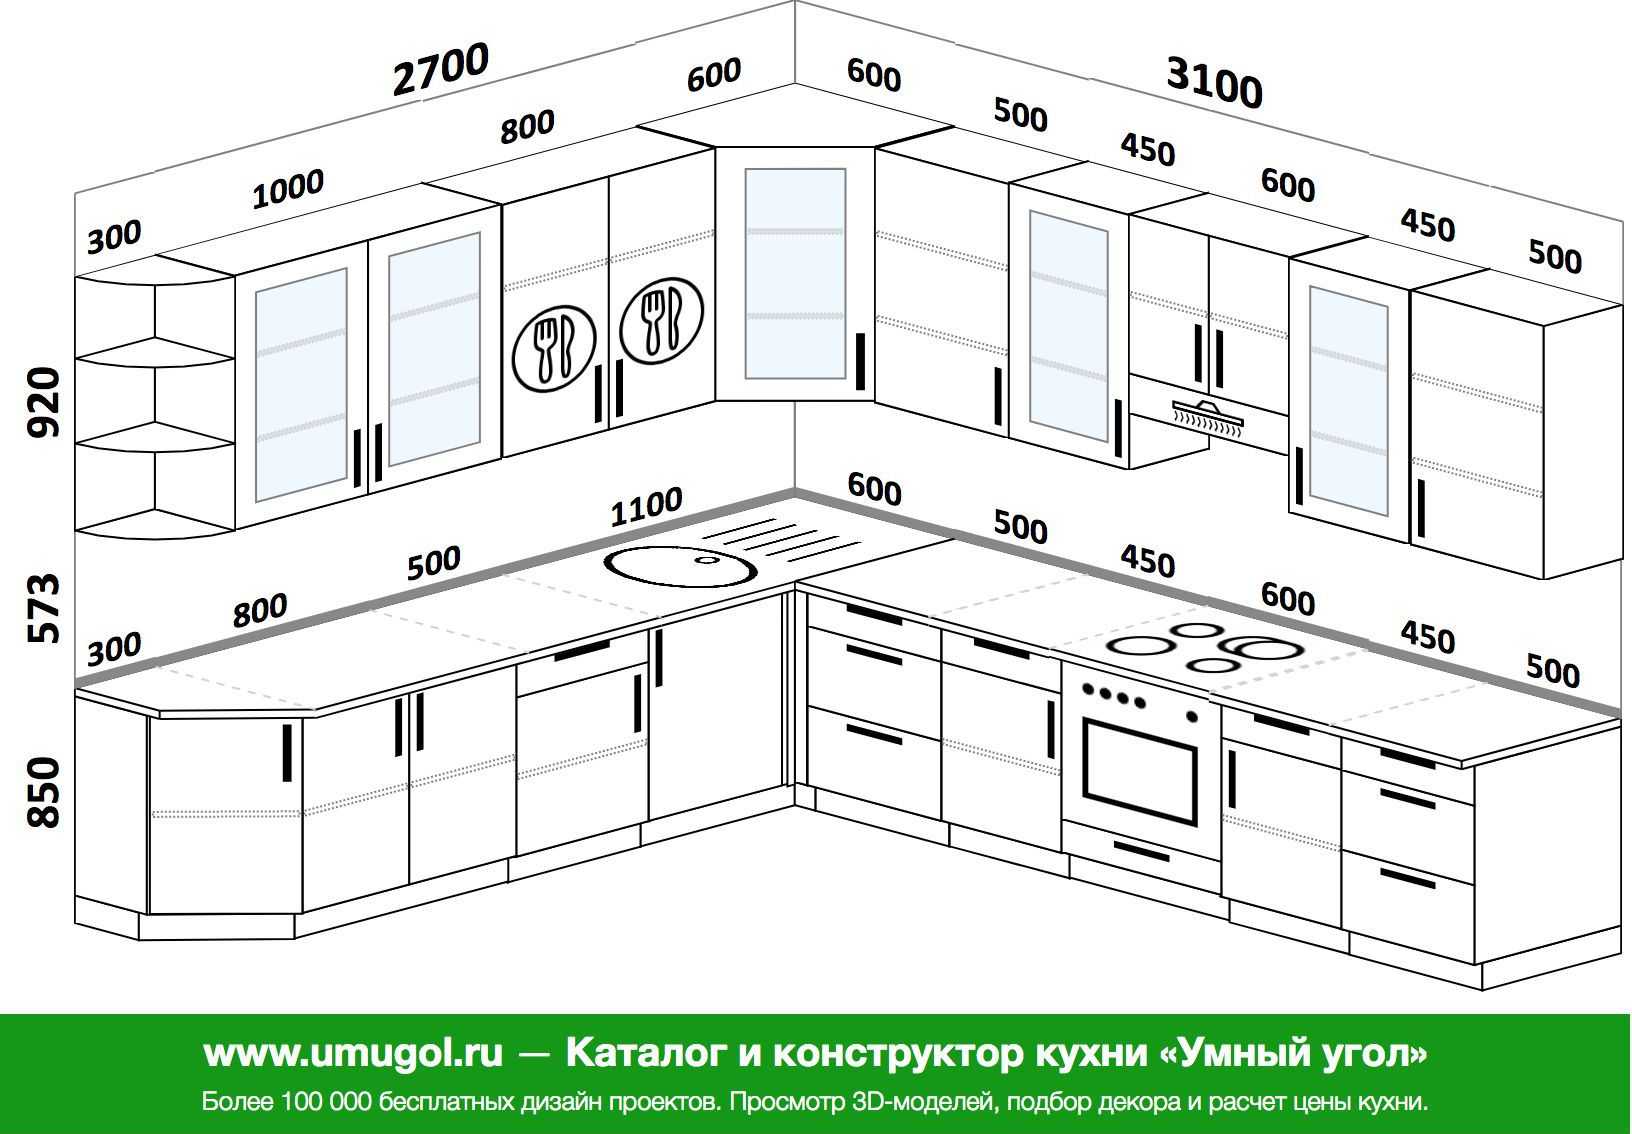 Размеры кухни: стандартные габариты кухонного гарнитура (высота, ширина)